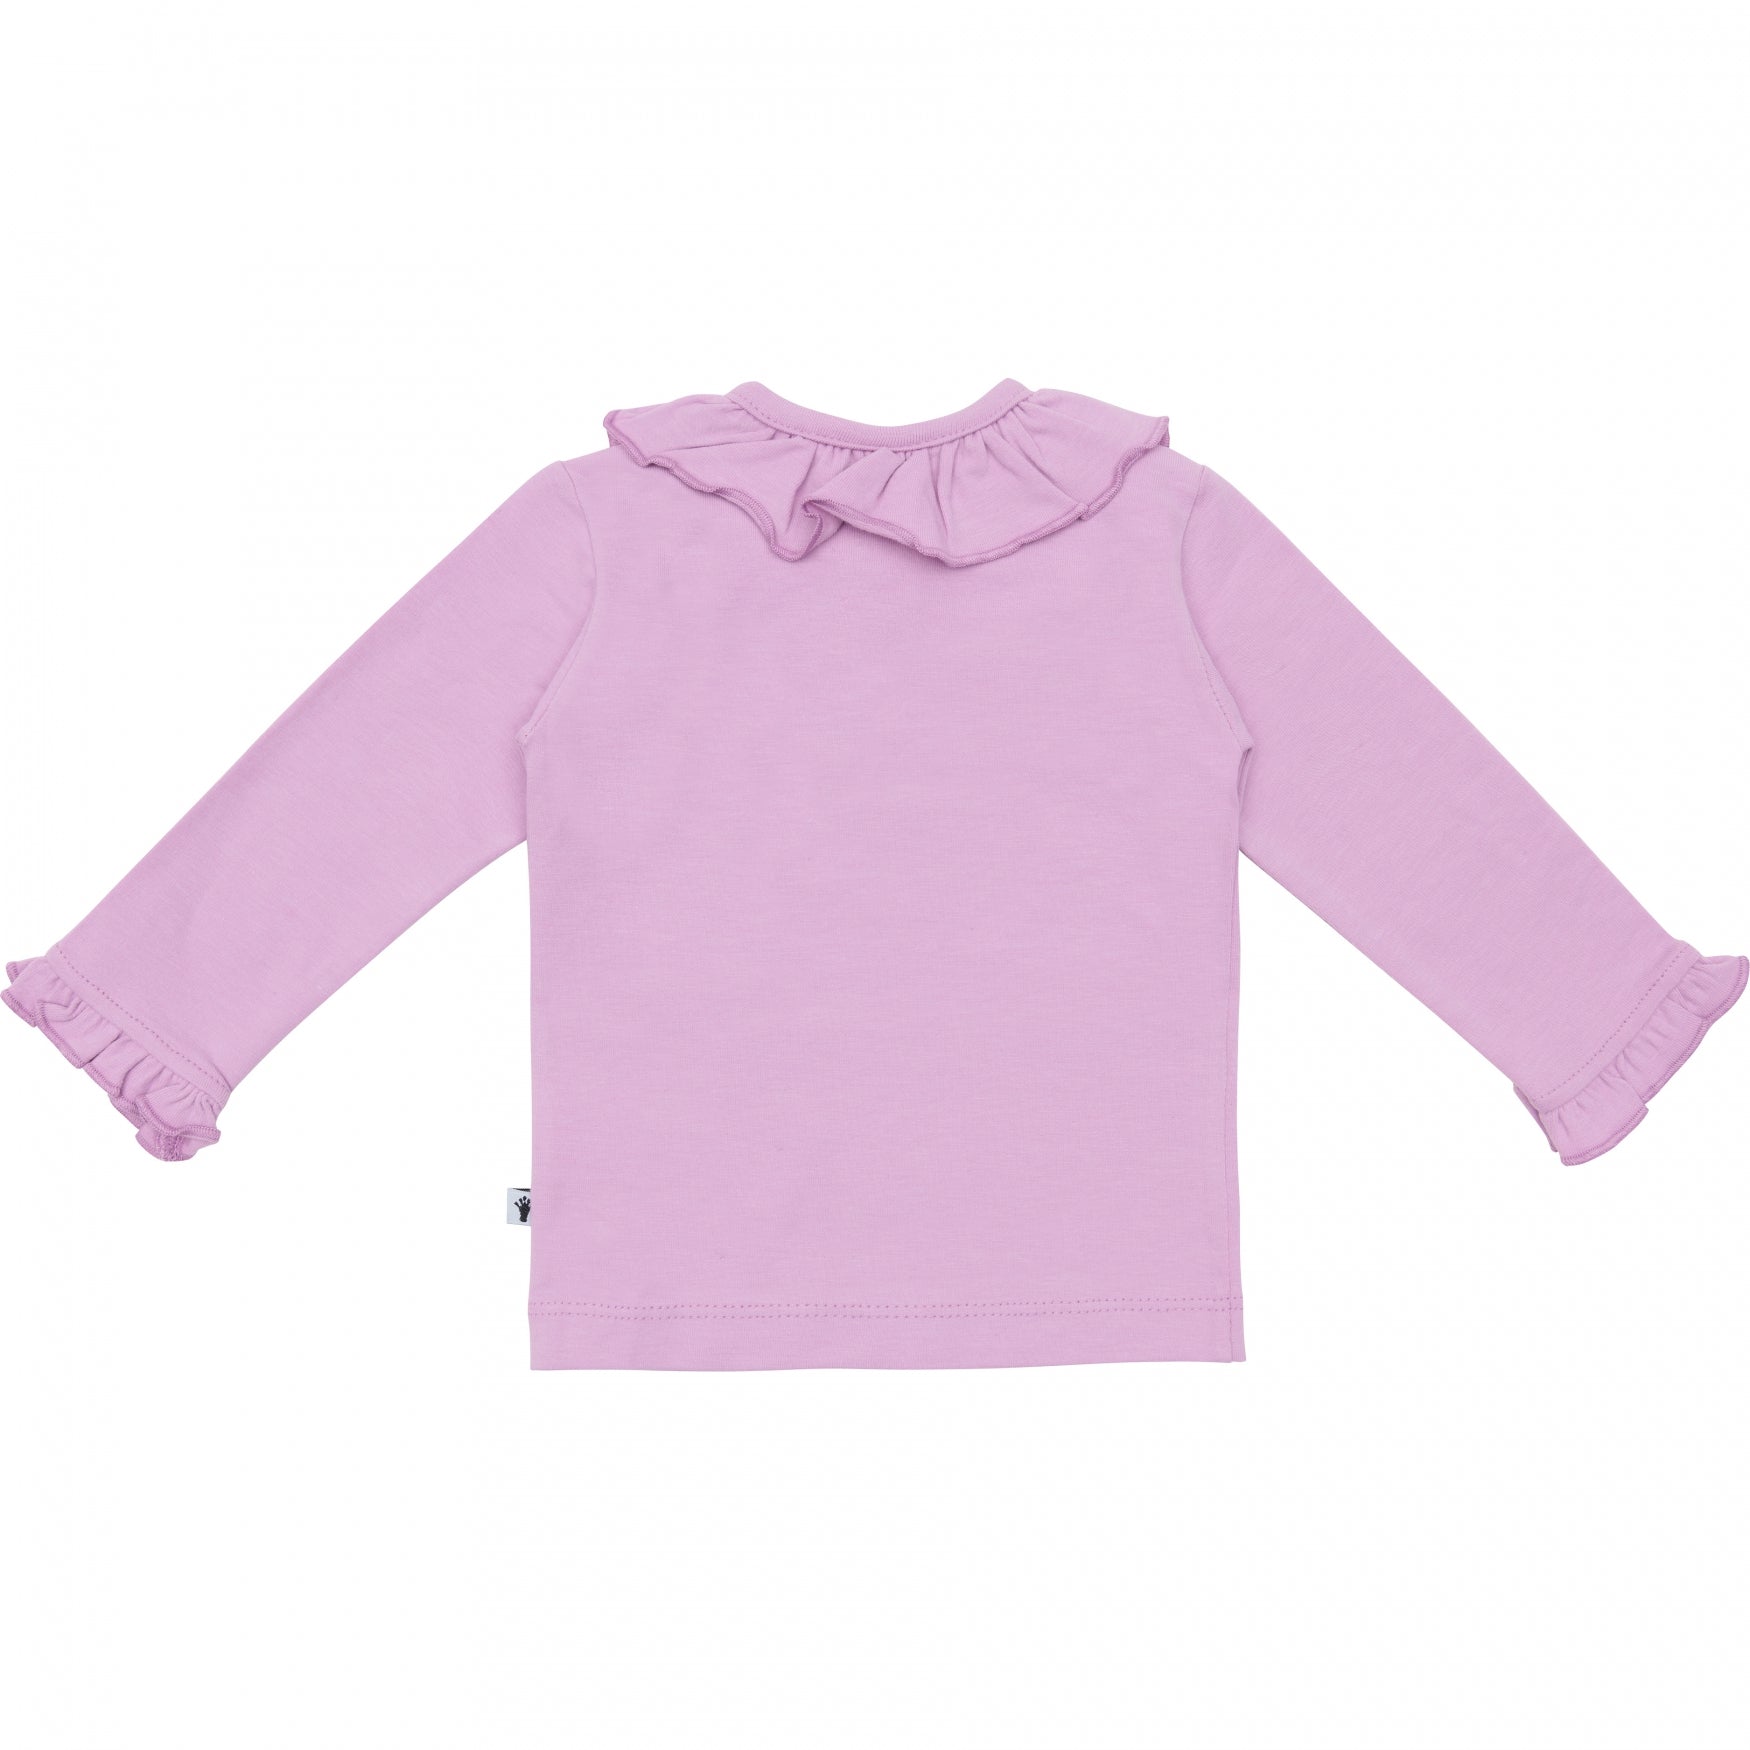 Meisjes Shirt Ruffle Collar van Klein Baby in de kleur Violet Tulle in maat 86.